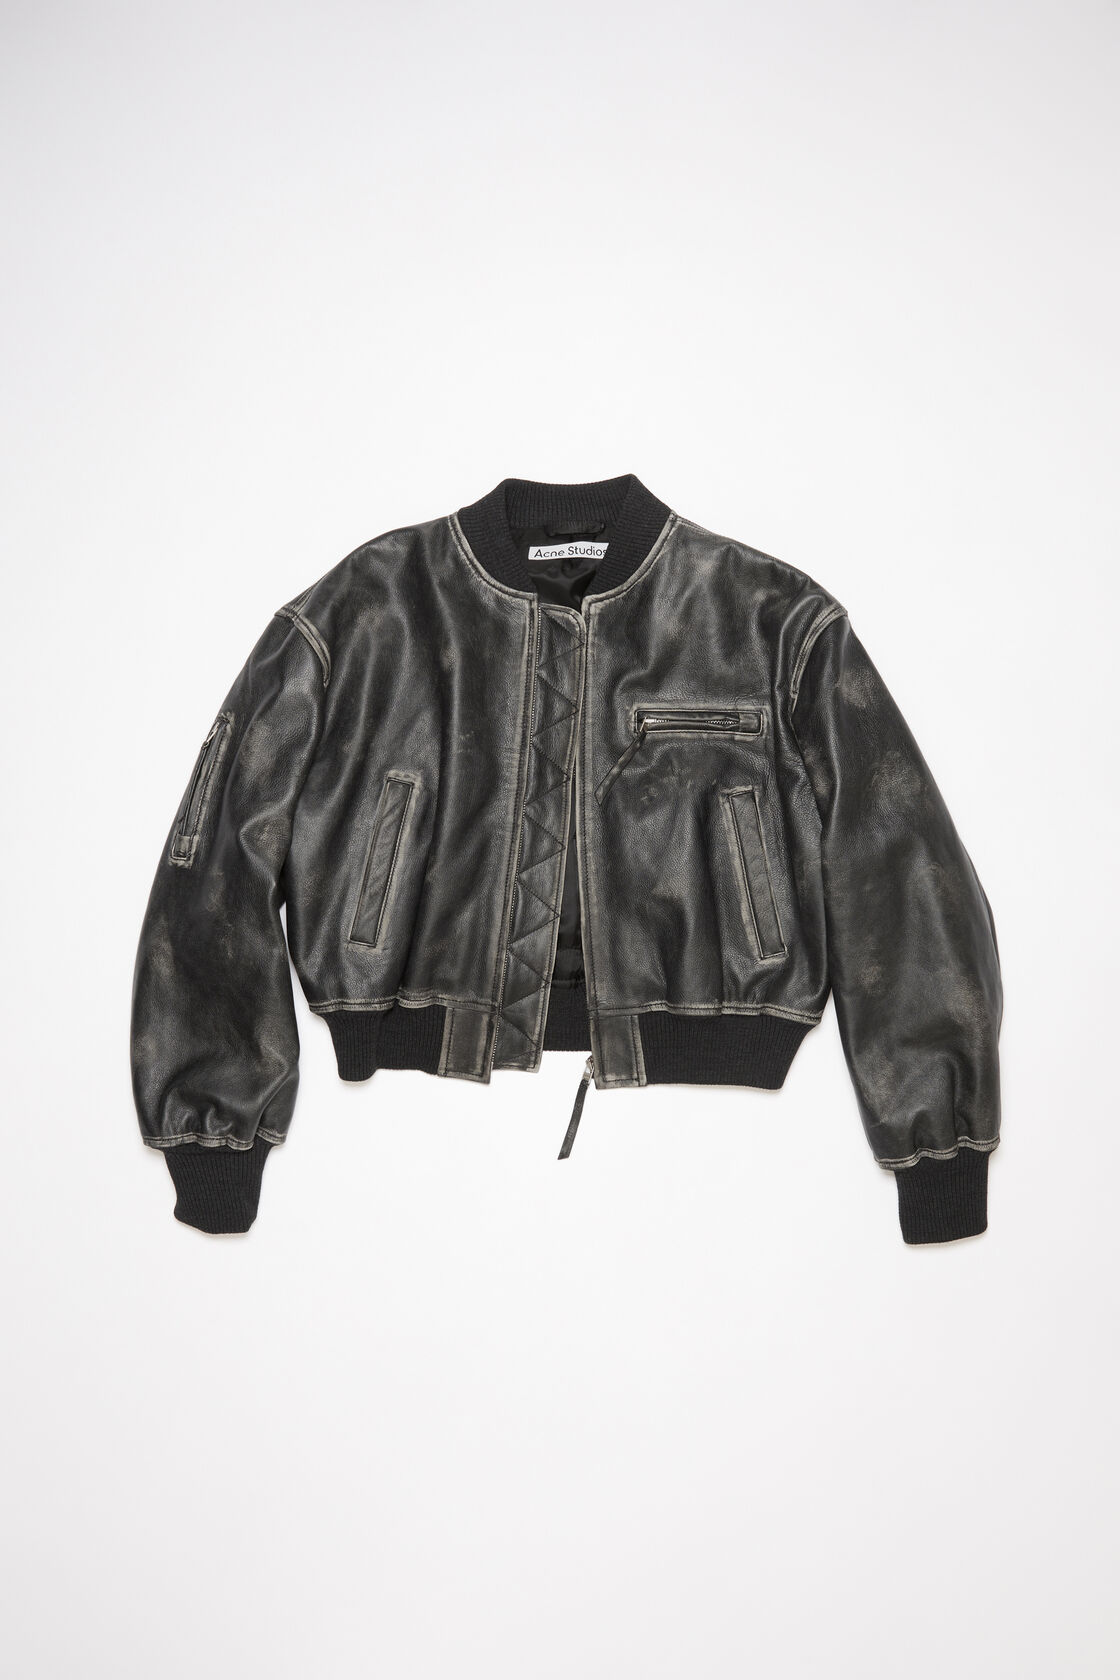 ACNE STUDIOS Leatherjacket in Vintage Black